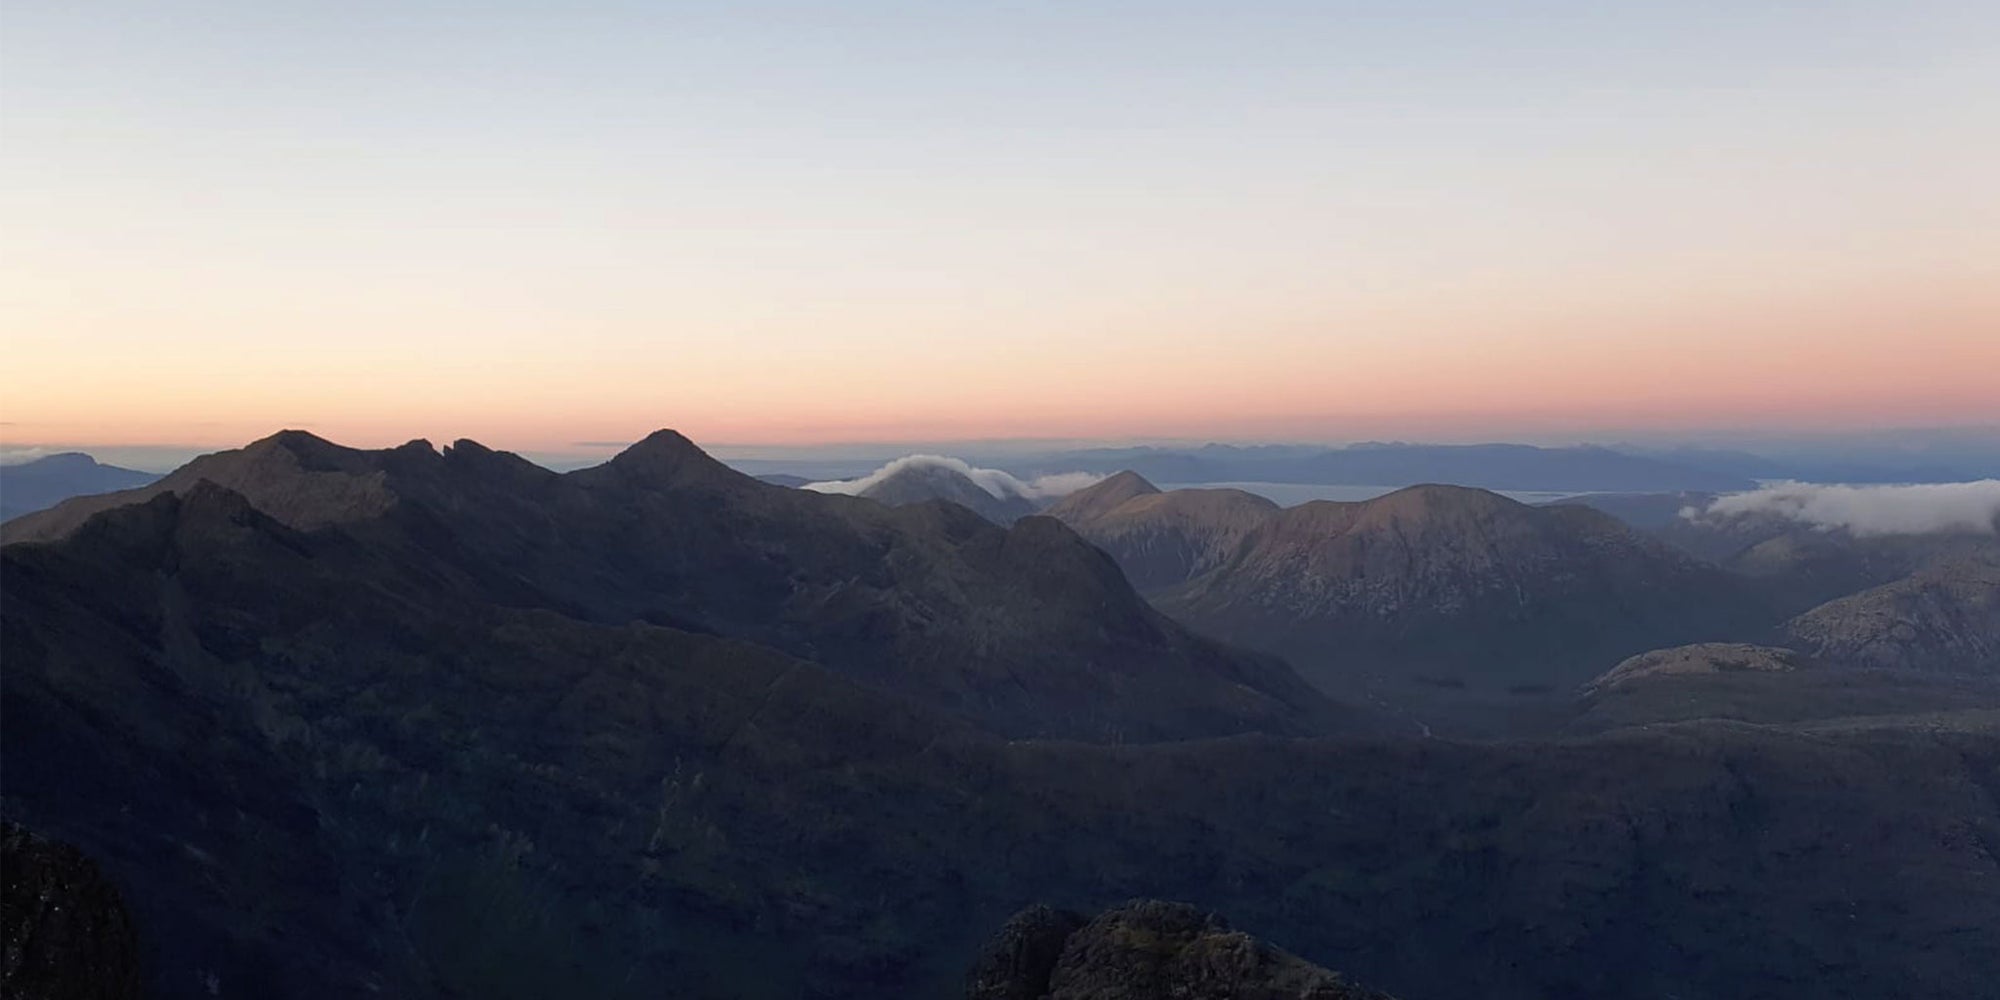 Attempting the Cuillin Ridge: Scottish Adventures